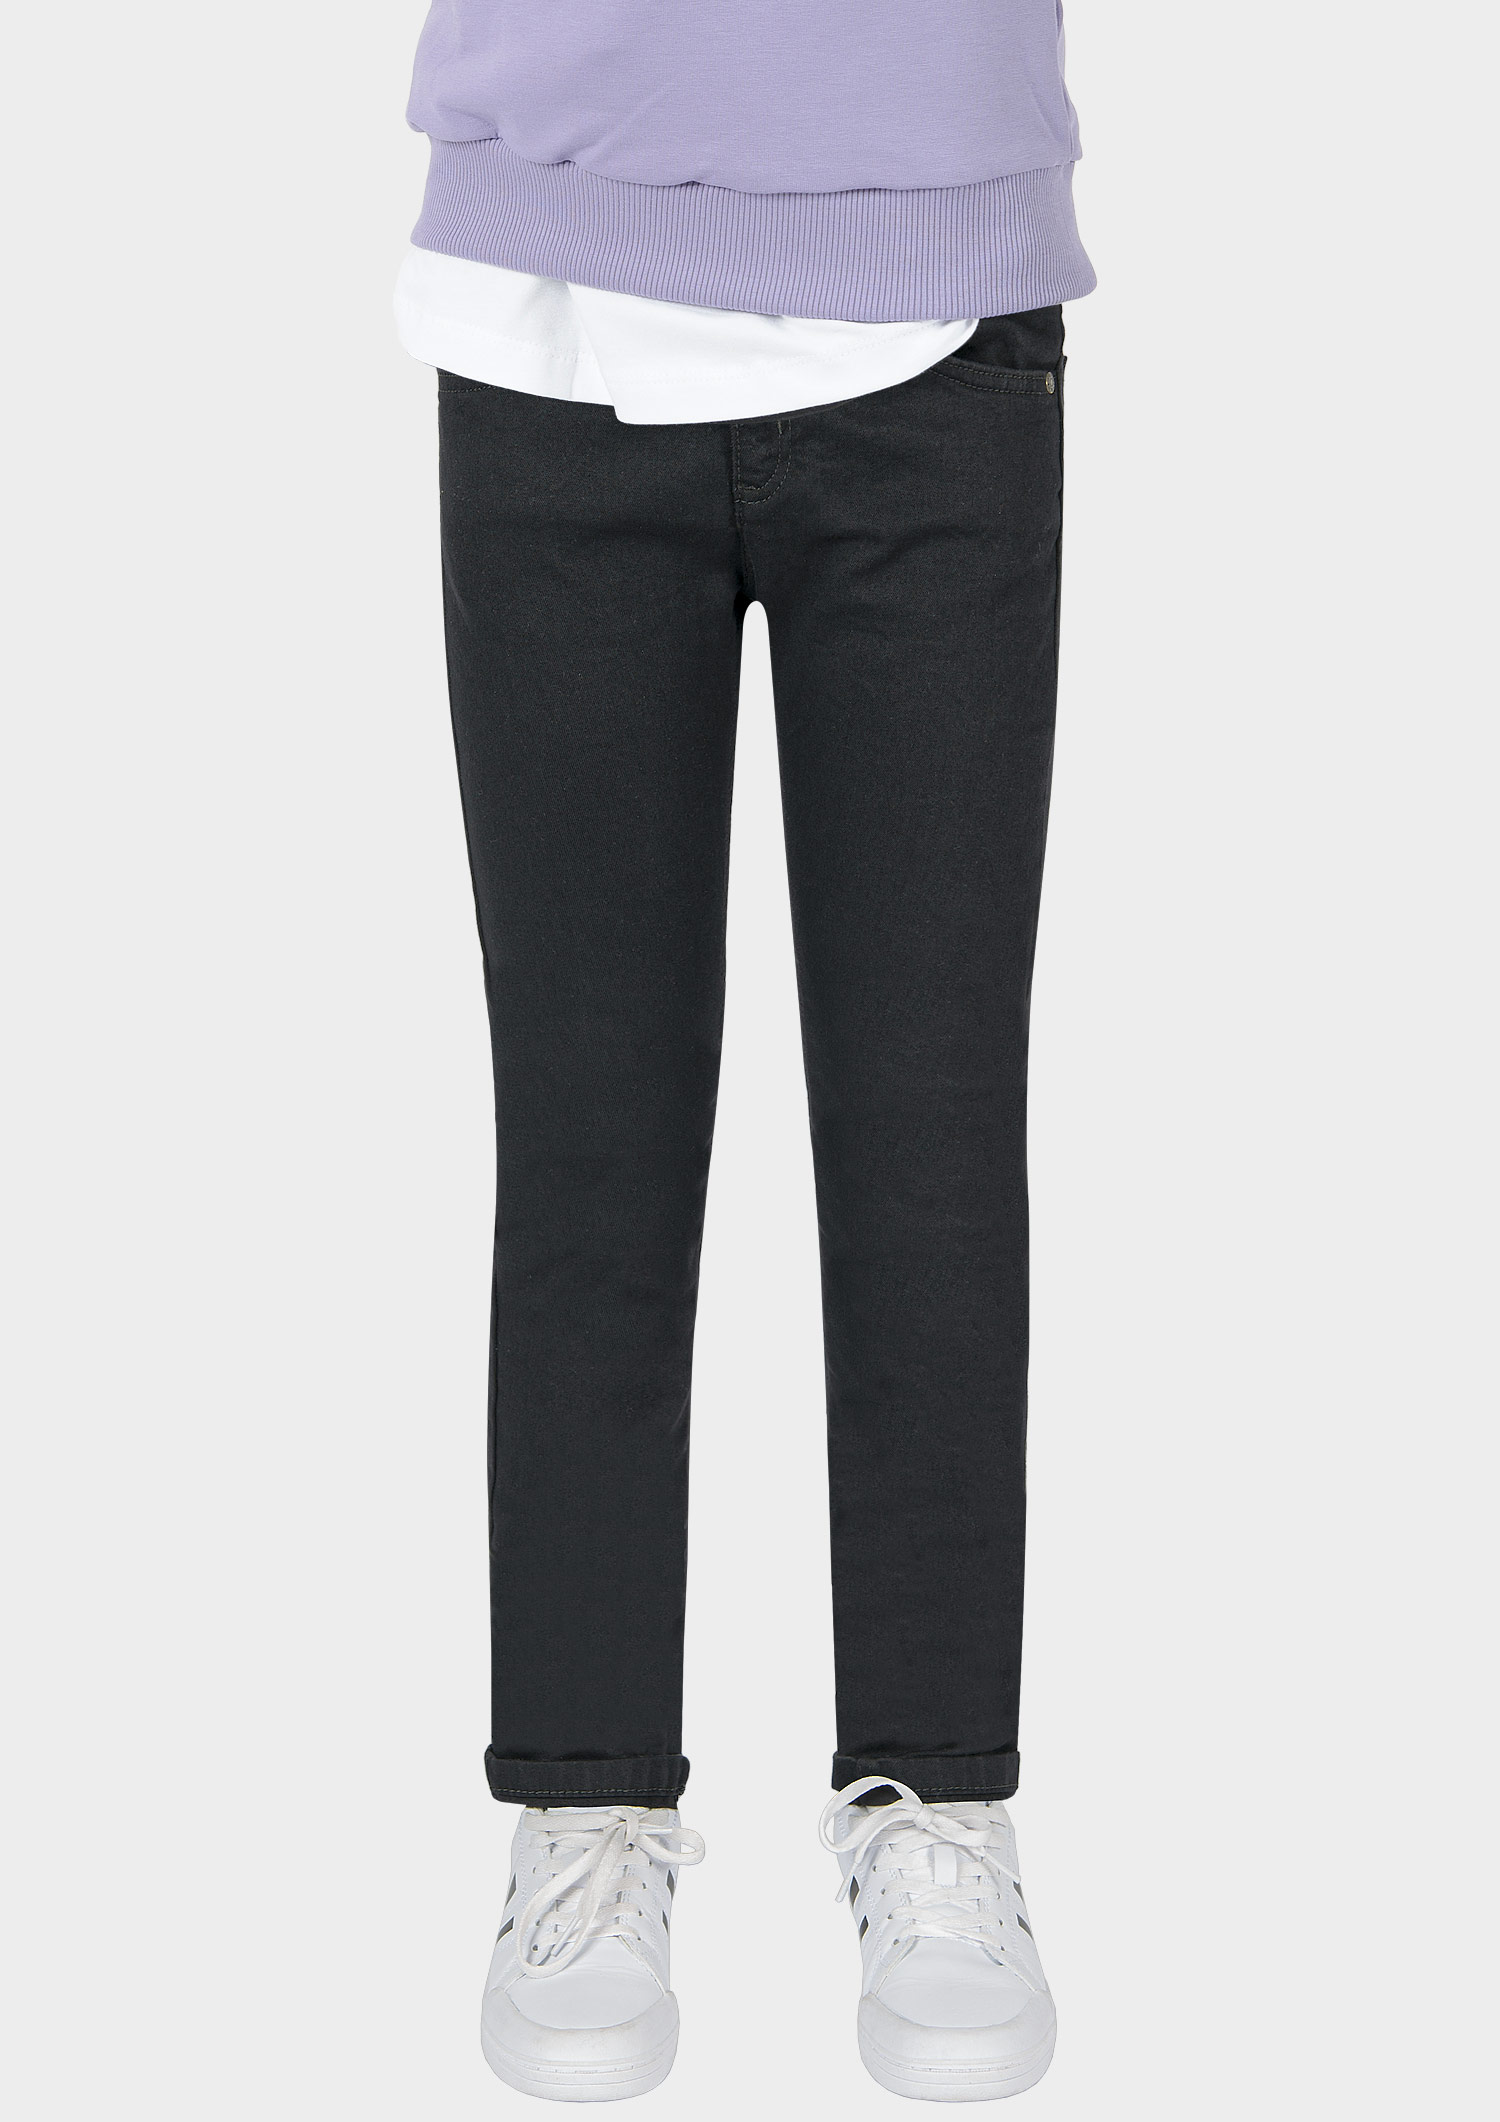 0202-NOS Boys Jeans Skinny verfügbar in Slim,Normal,Wide